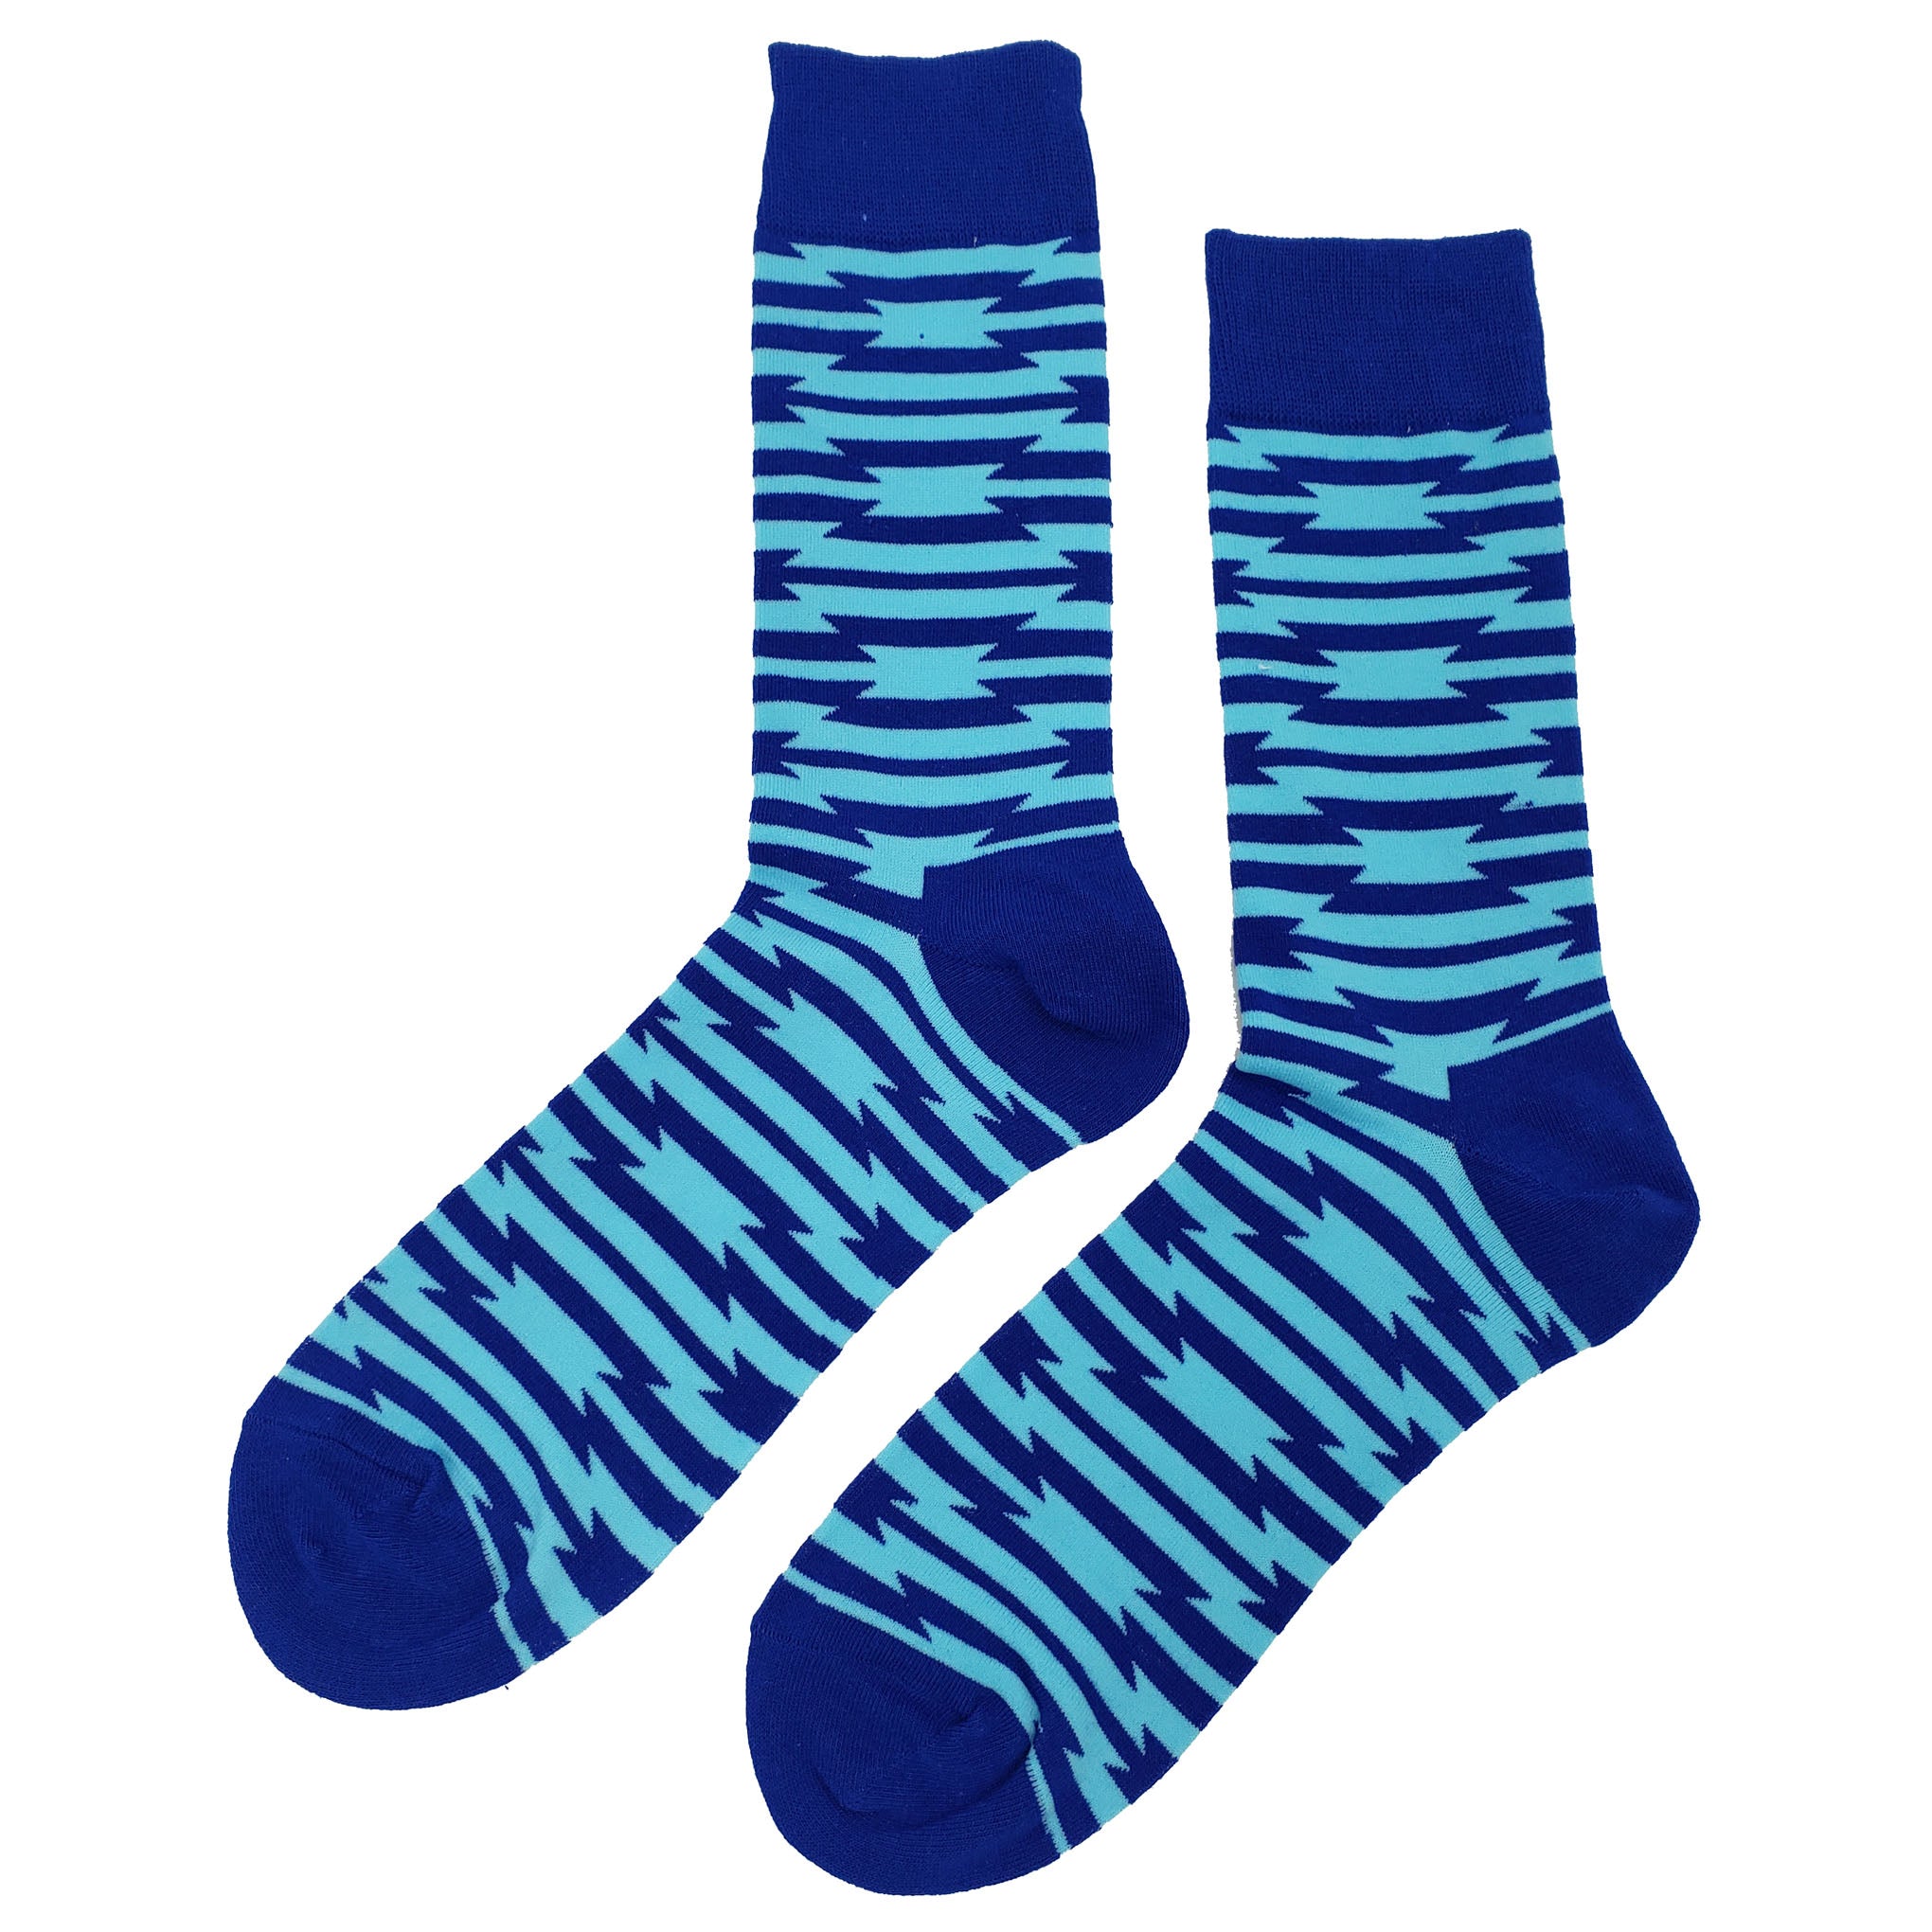 Wacky Blue Socks - Fun and Crazy Socks at Sockfly.com